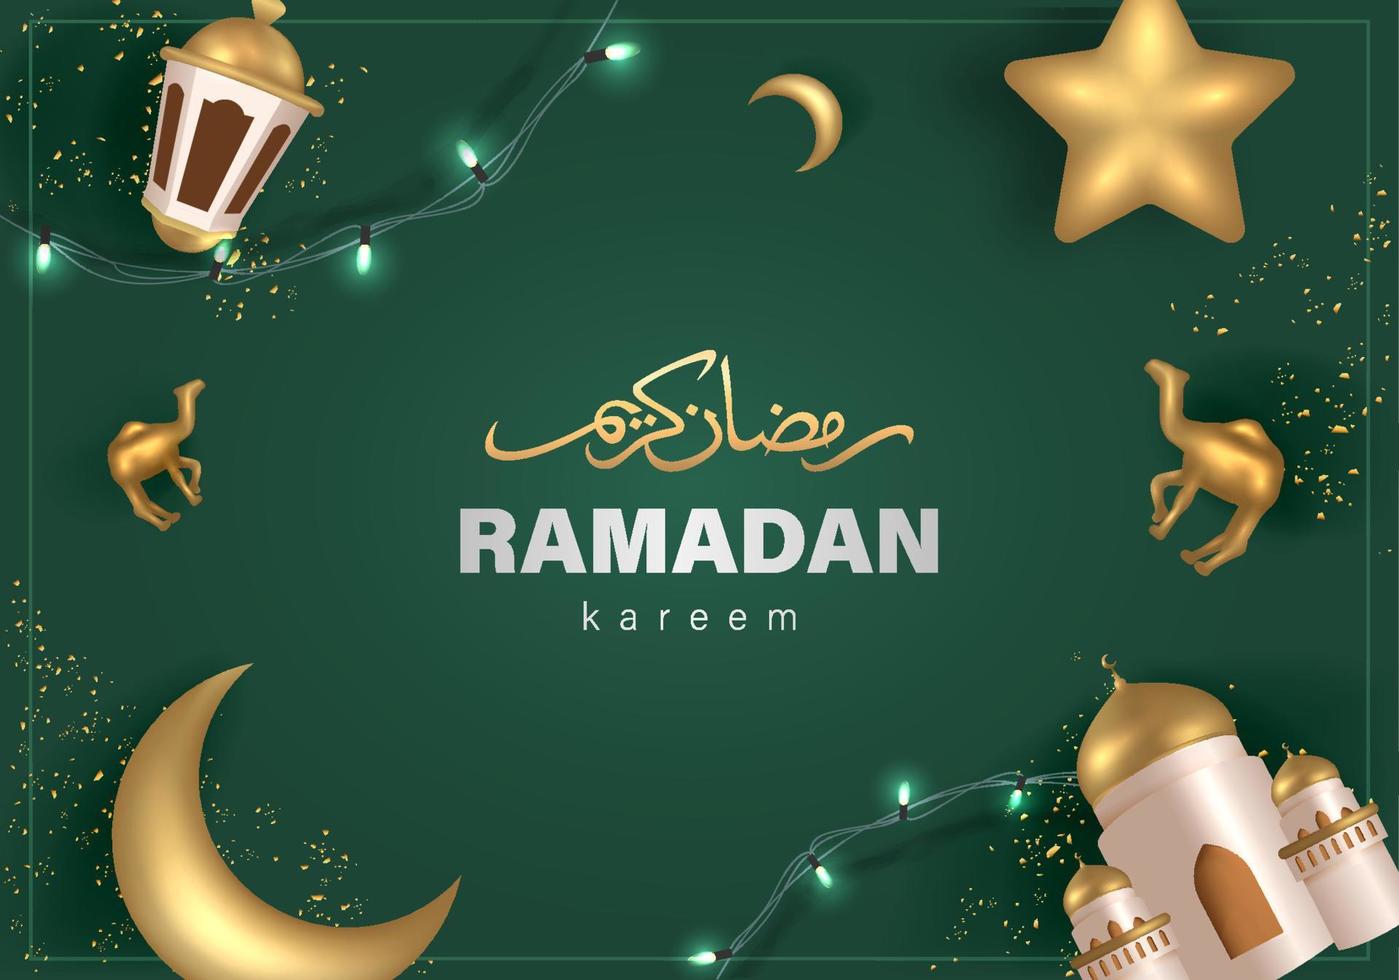 ramadan kareem-ontwerp met 3D-realistische islamitische ornament vectorillustratie vector